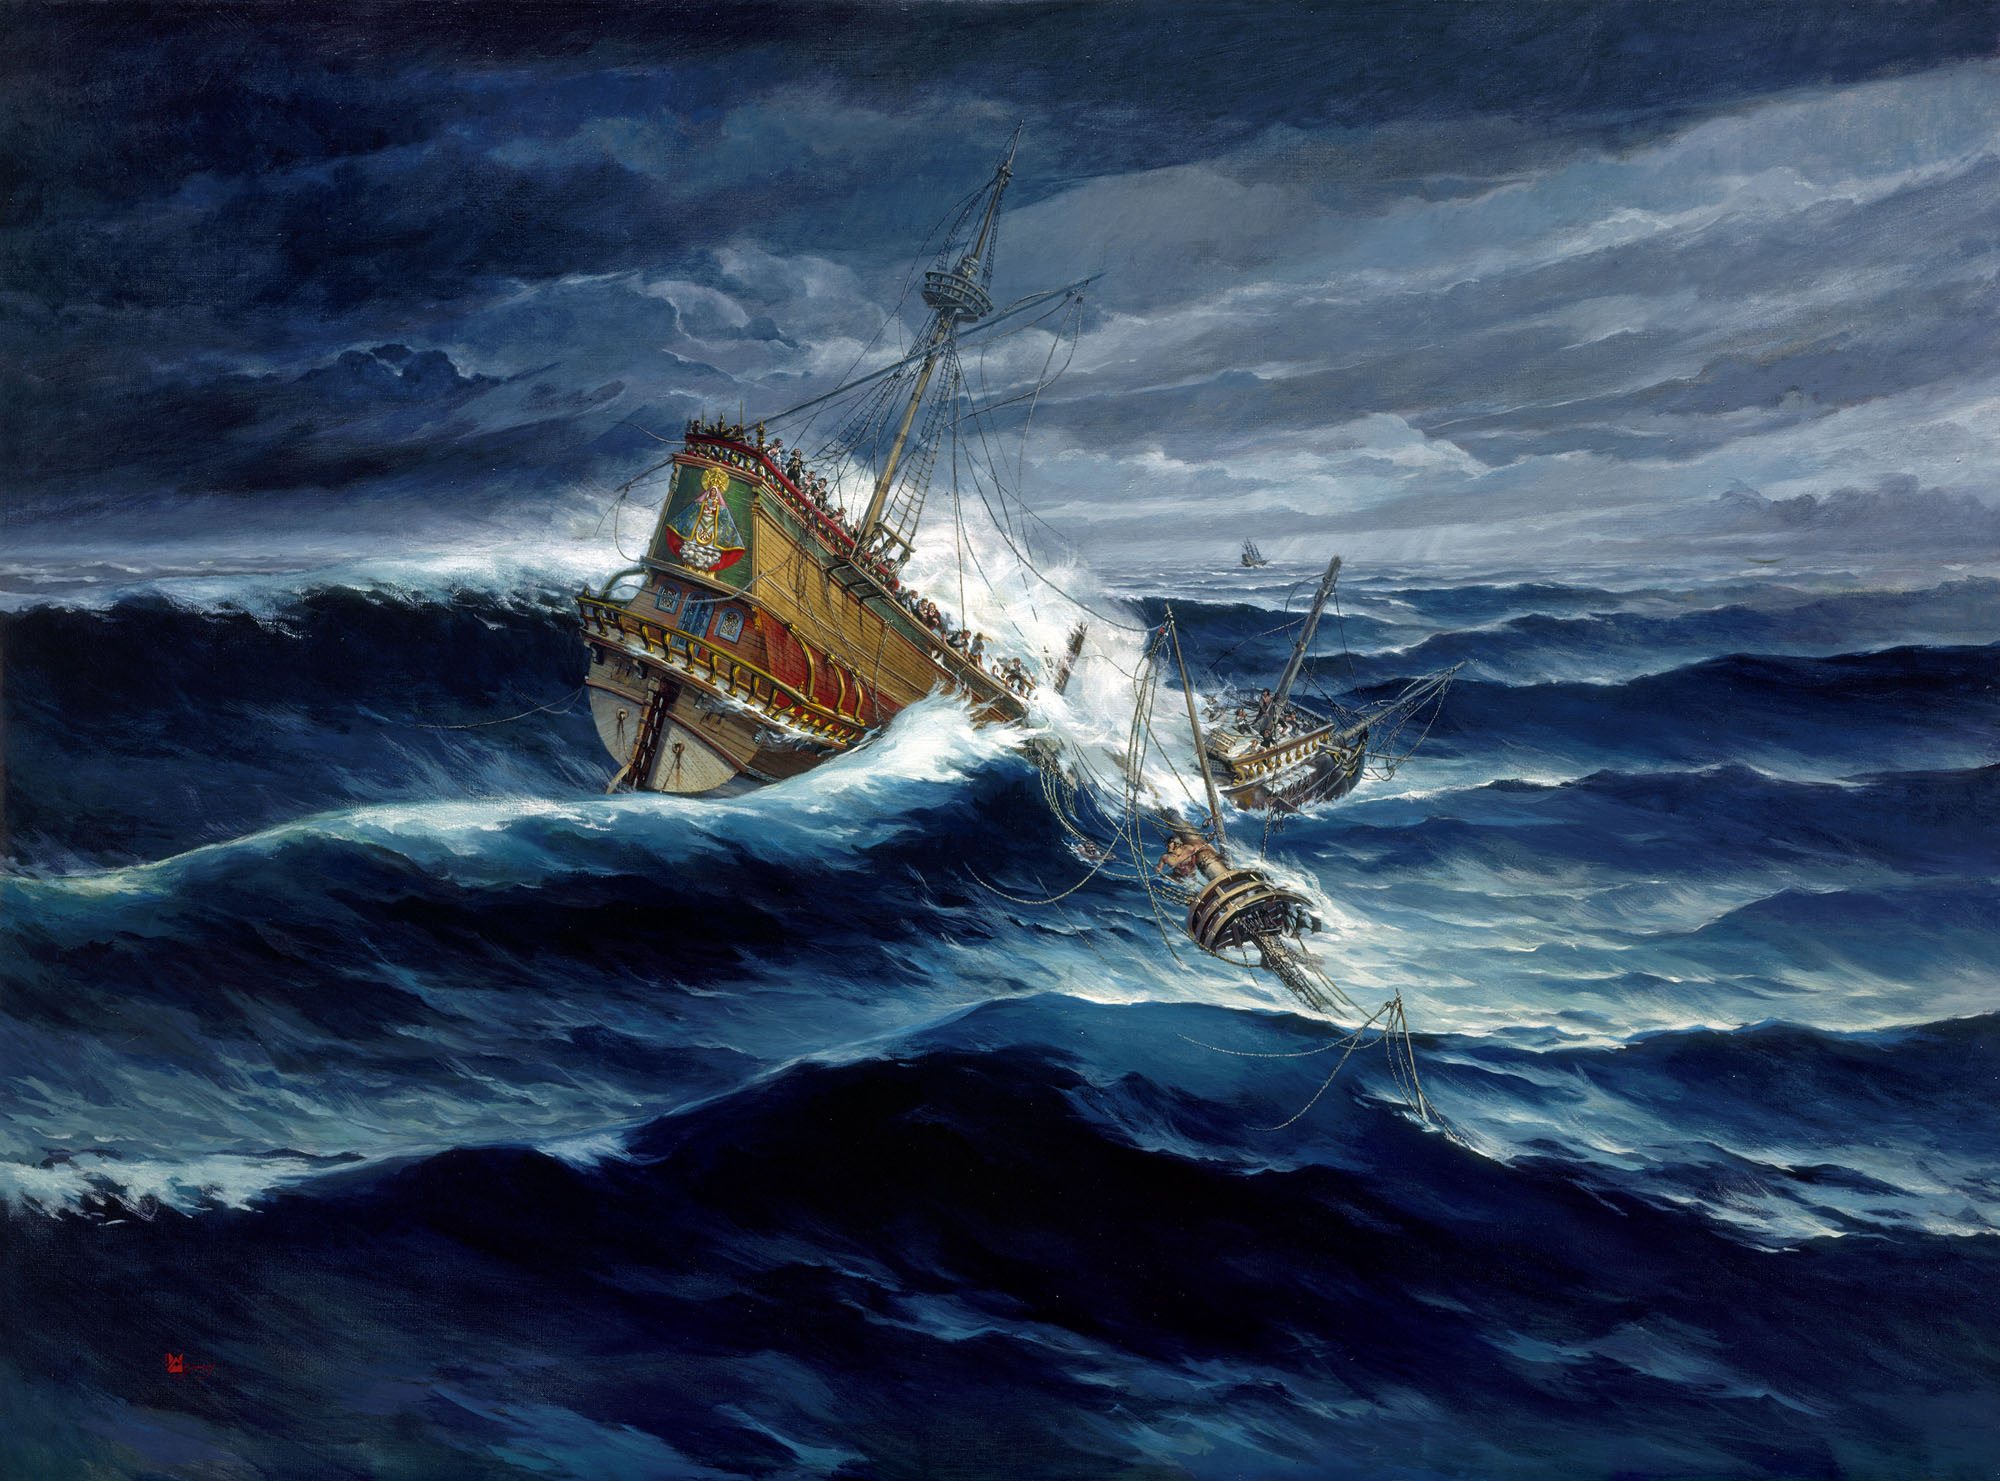 На затонувшем в XVII столетии галеоне «Нуэстра-Сеньора-де-Аточа» было сокровищ на 20 млн песо. Изображение YEORGOS LAMPATHAKIS / NGS​